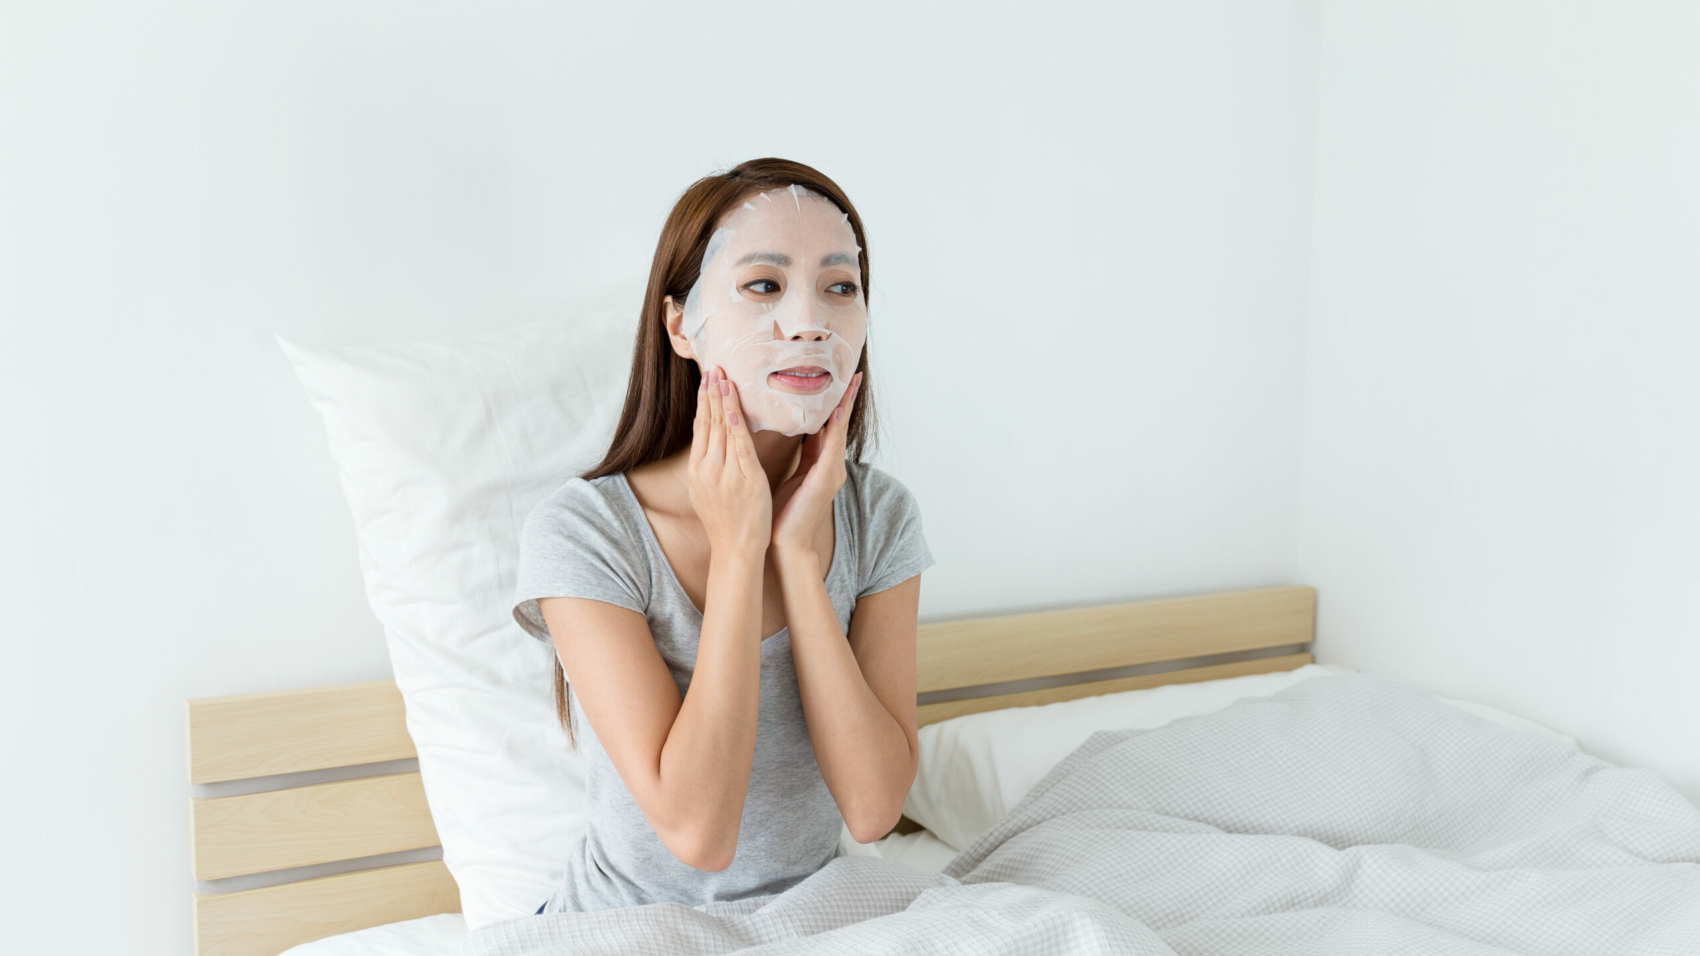 Woman doing facial masking